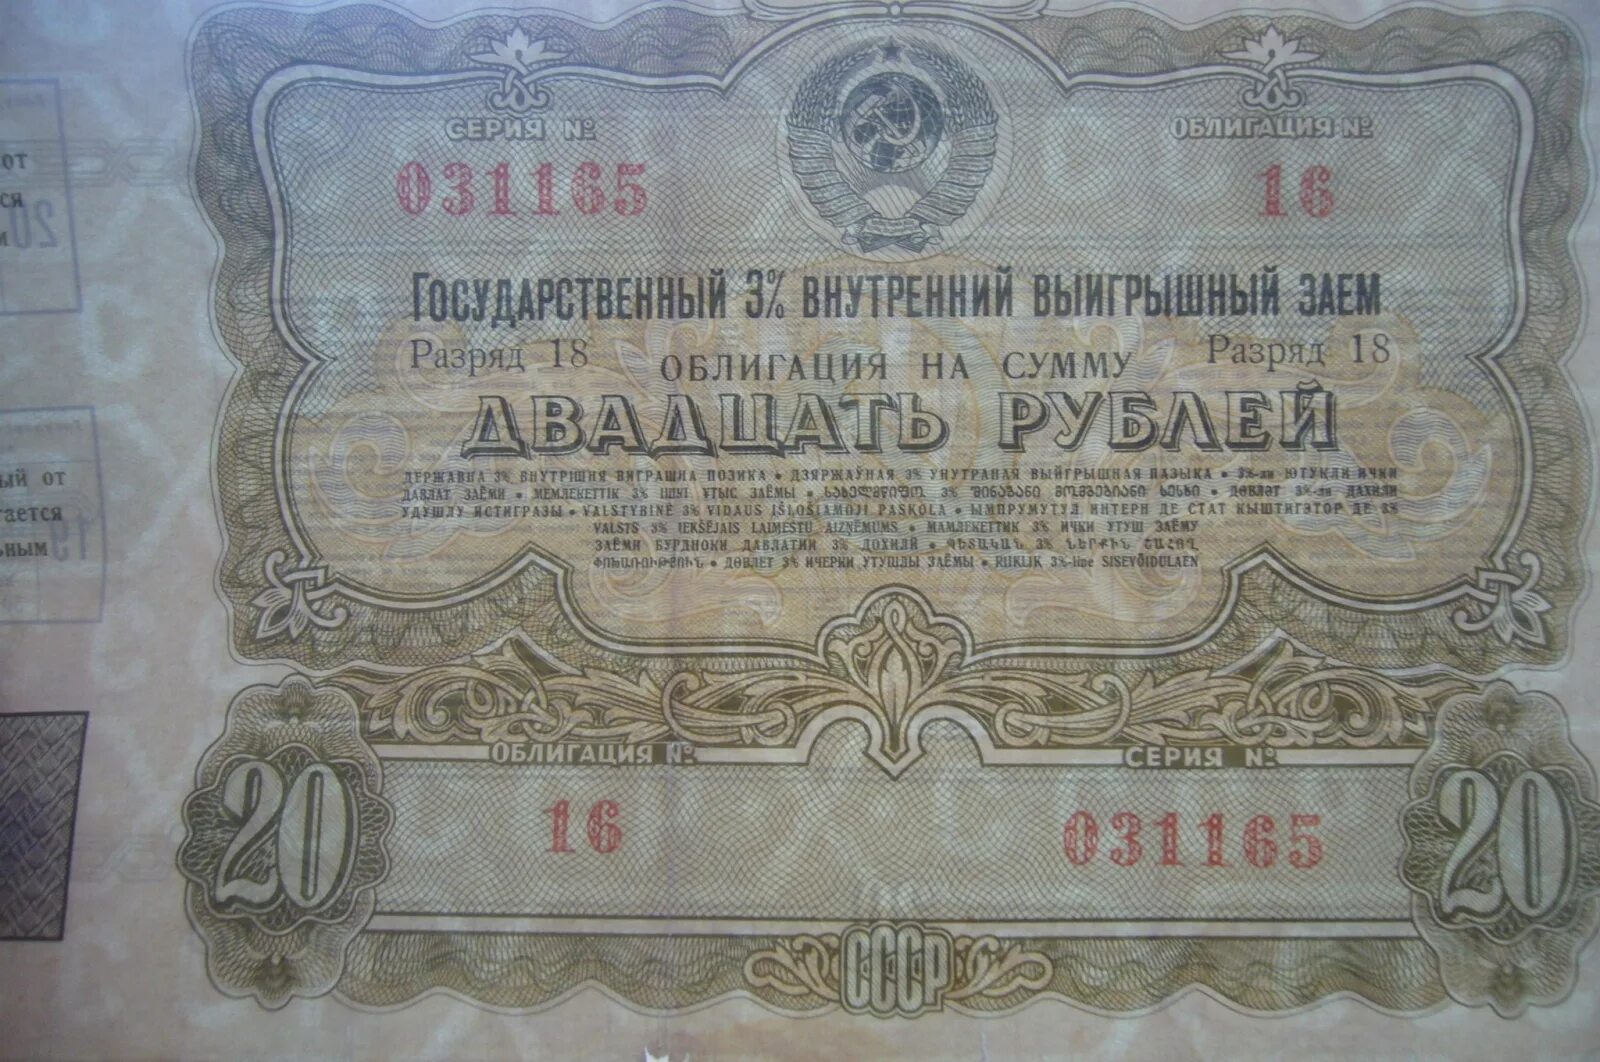 20 рублей 1961